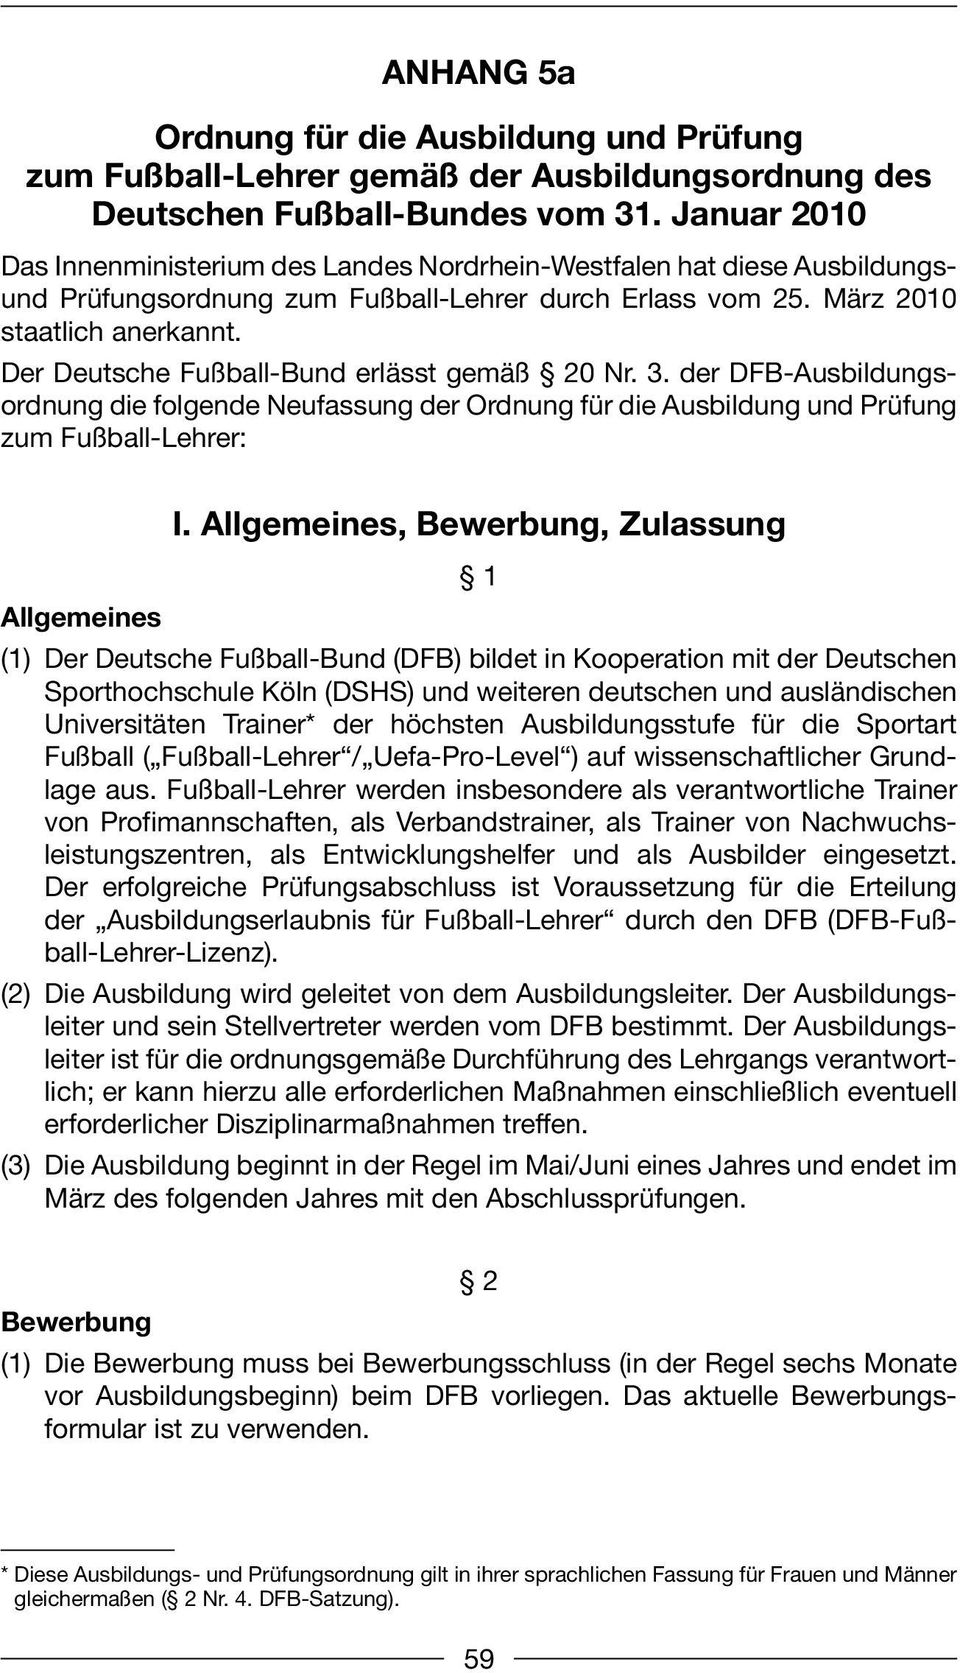 Der Deutsche Fußball-Bund erlässt gemäß 20 Nr. 3. der DFB-Ausbildungsordnung die folgende Neufassung der Ordnung für die Ausbildung und Prüfung zum Fußball-Lehrer: Allgemeines I.